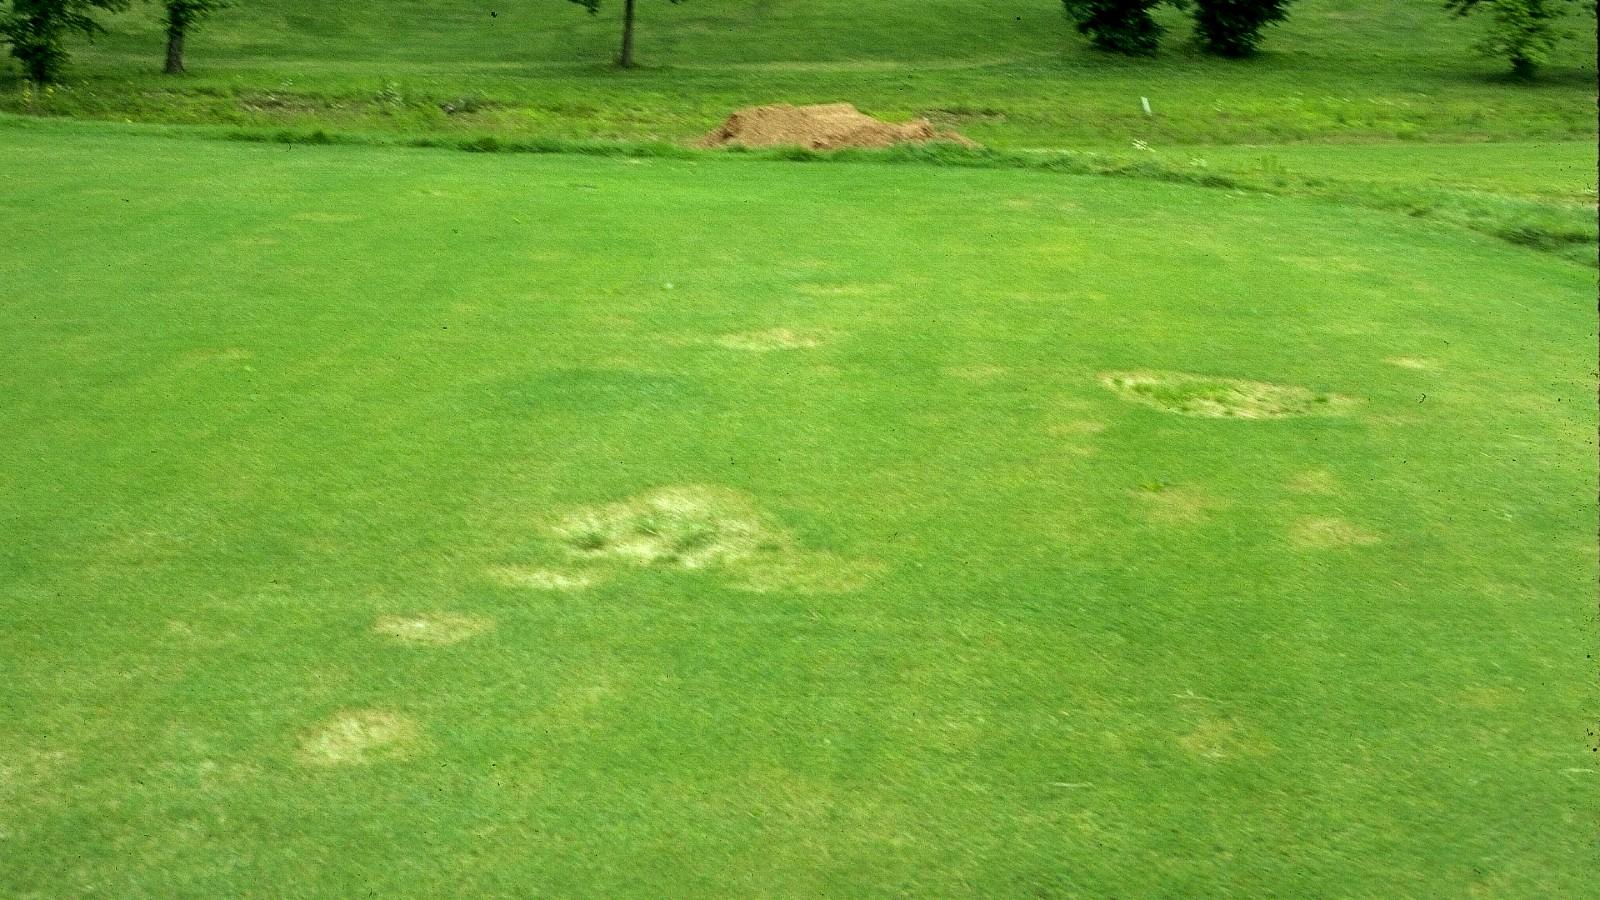 chinch bug damage on lawns